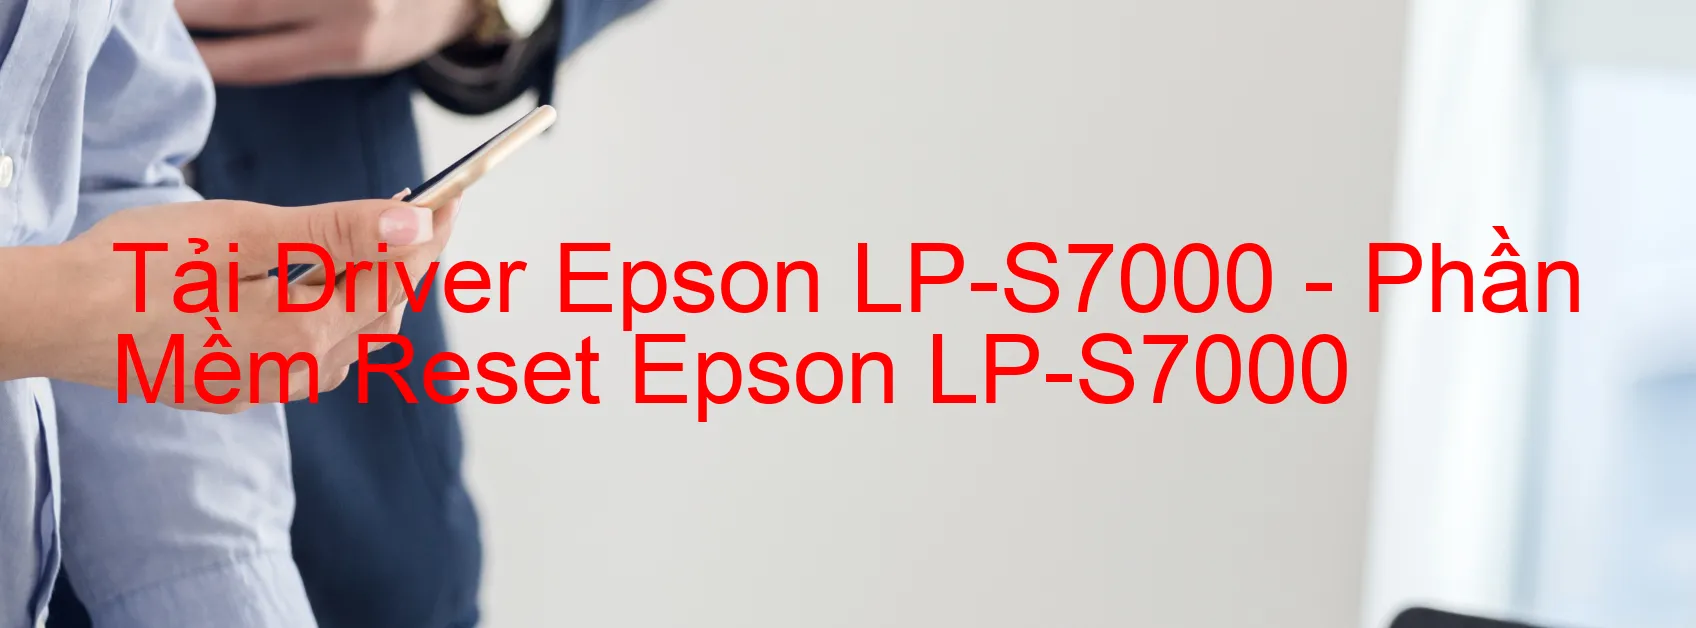 Driver Epson LP-S7000, Phần Mềm Reset Epson LP-S7000